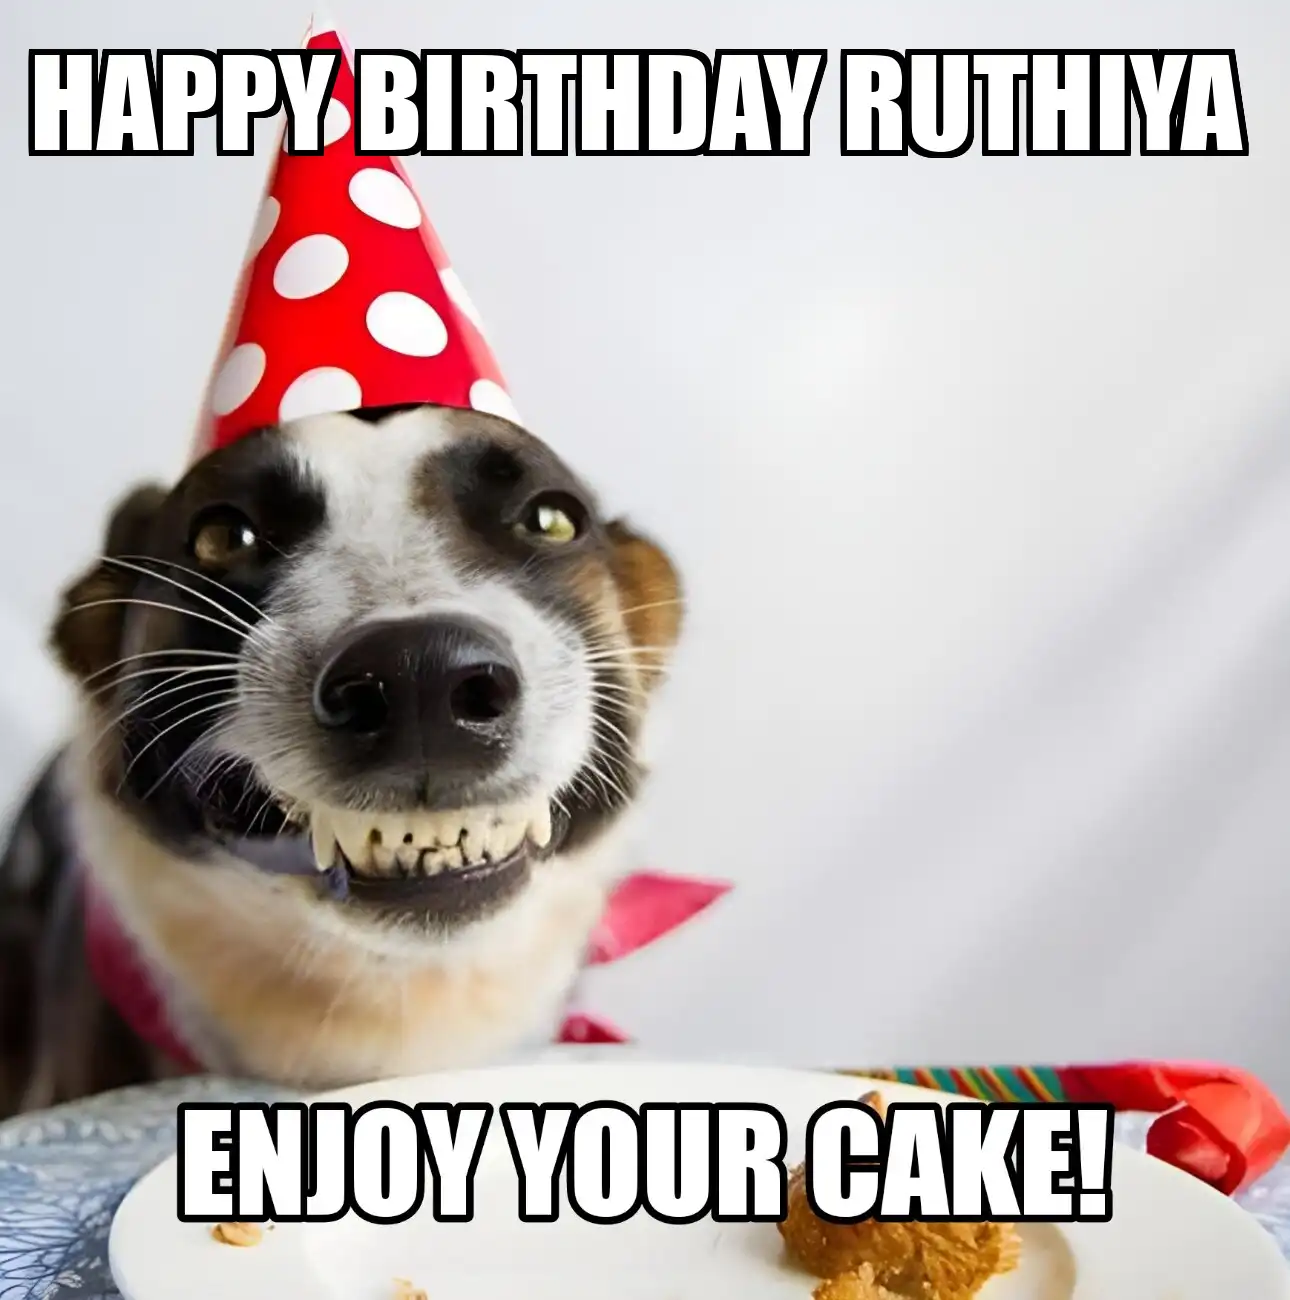 Happy Birthday Ruthiya Enjoy Your Cake Dog Meme